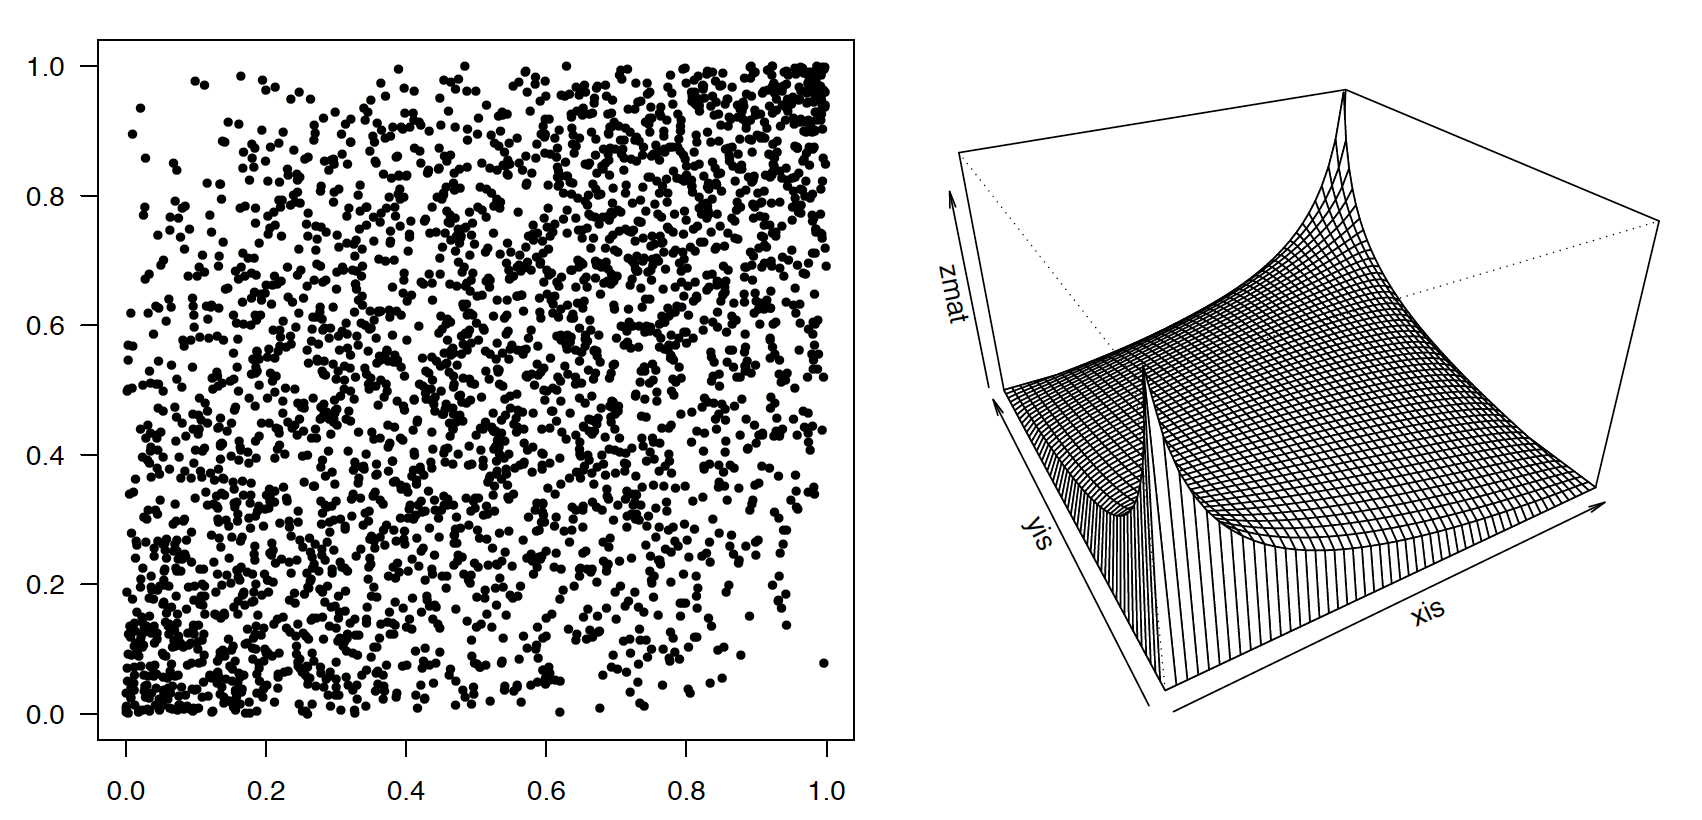 Kopula Gaussowska rho=0.5. Przykładowa 200 elementowa próba przedstawiona jest po lewej stronie, po prawej stronie przedstawiana jest gęstość